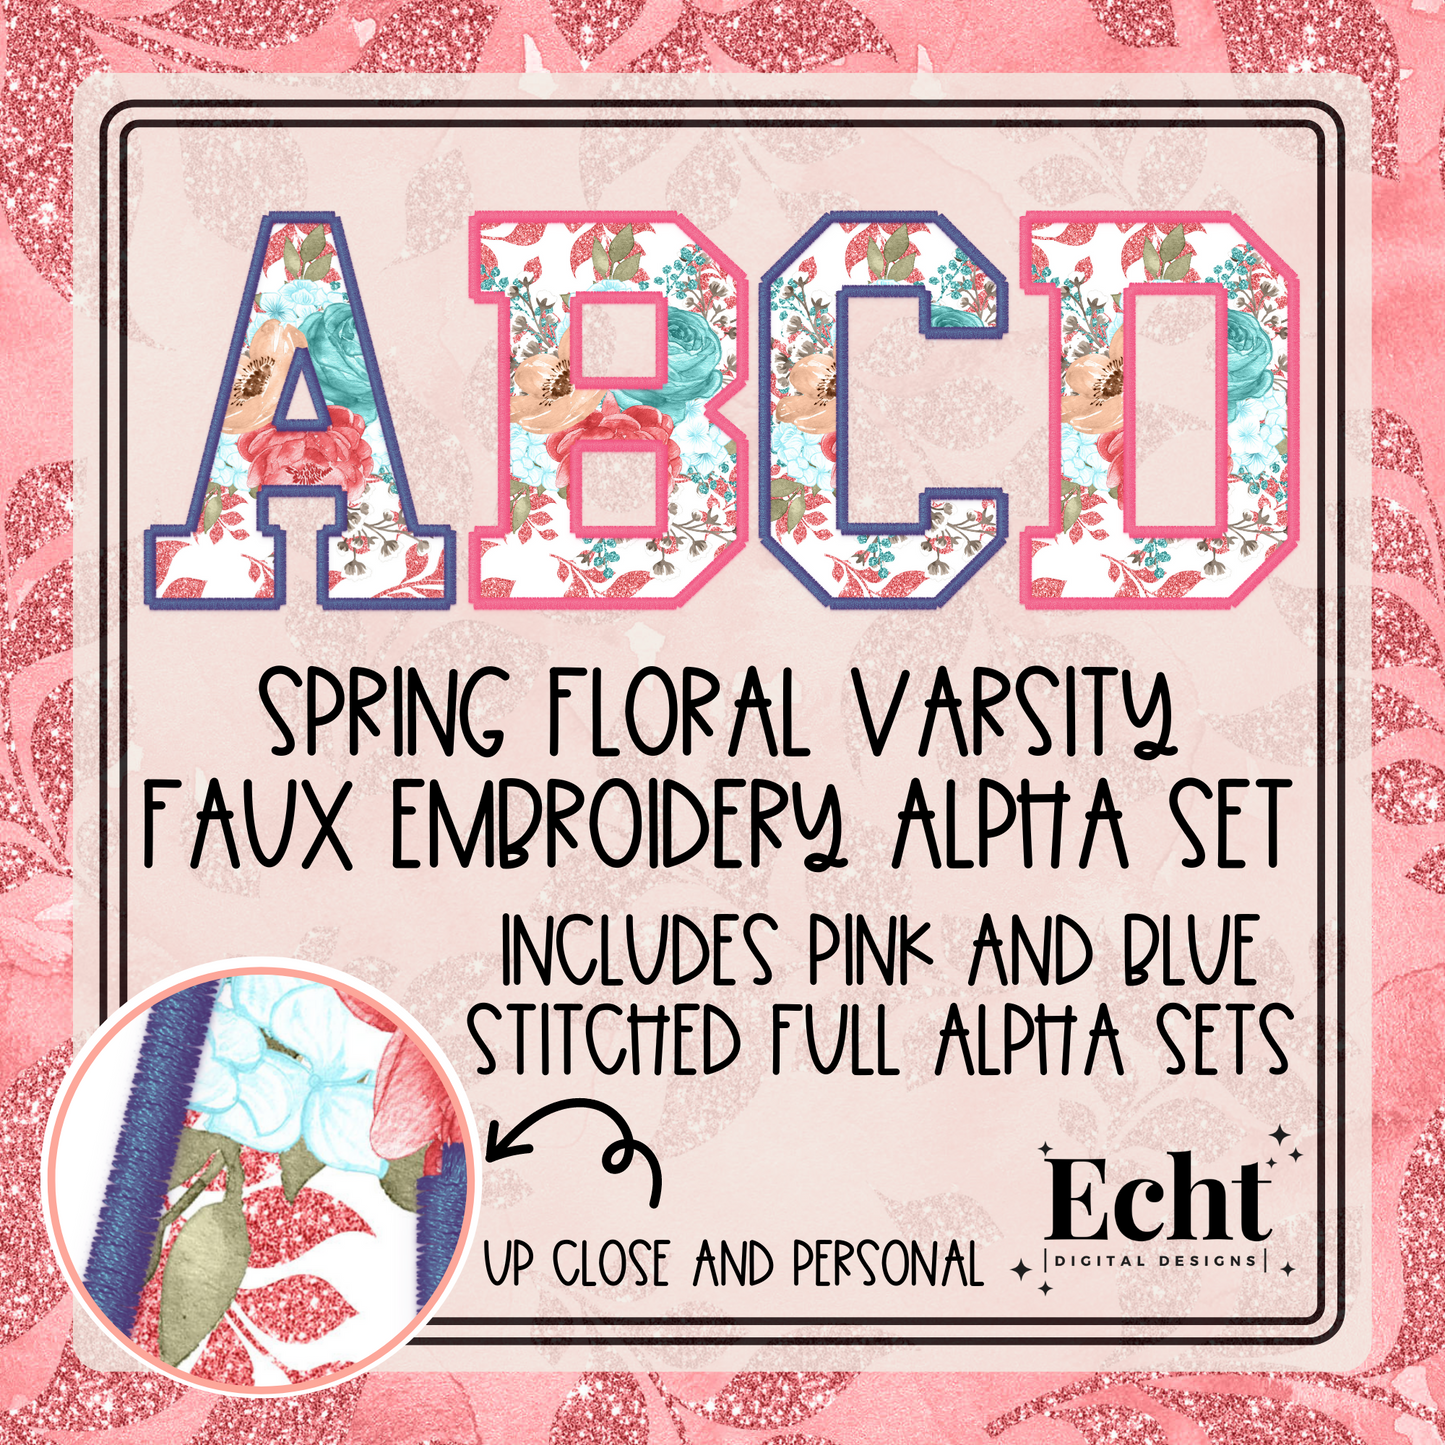 Spring Floral Varsity Faux Embroidery Alpha Set- Design Element- Digital Download